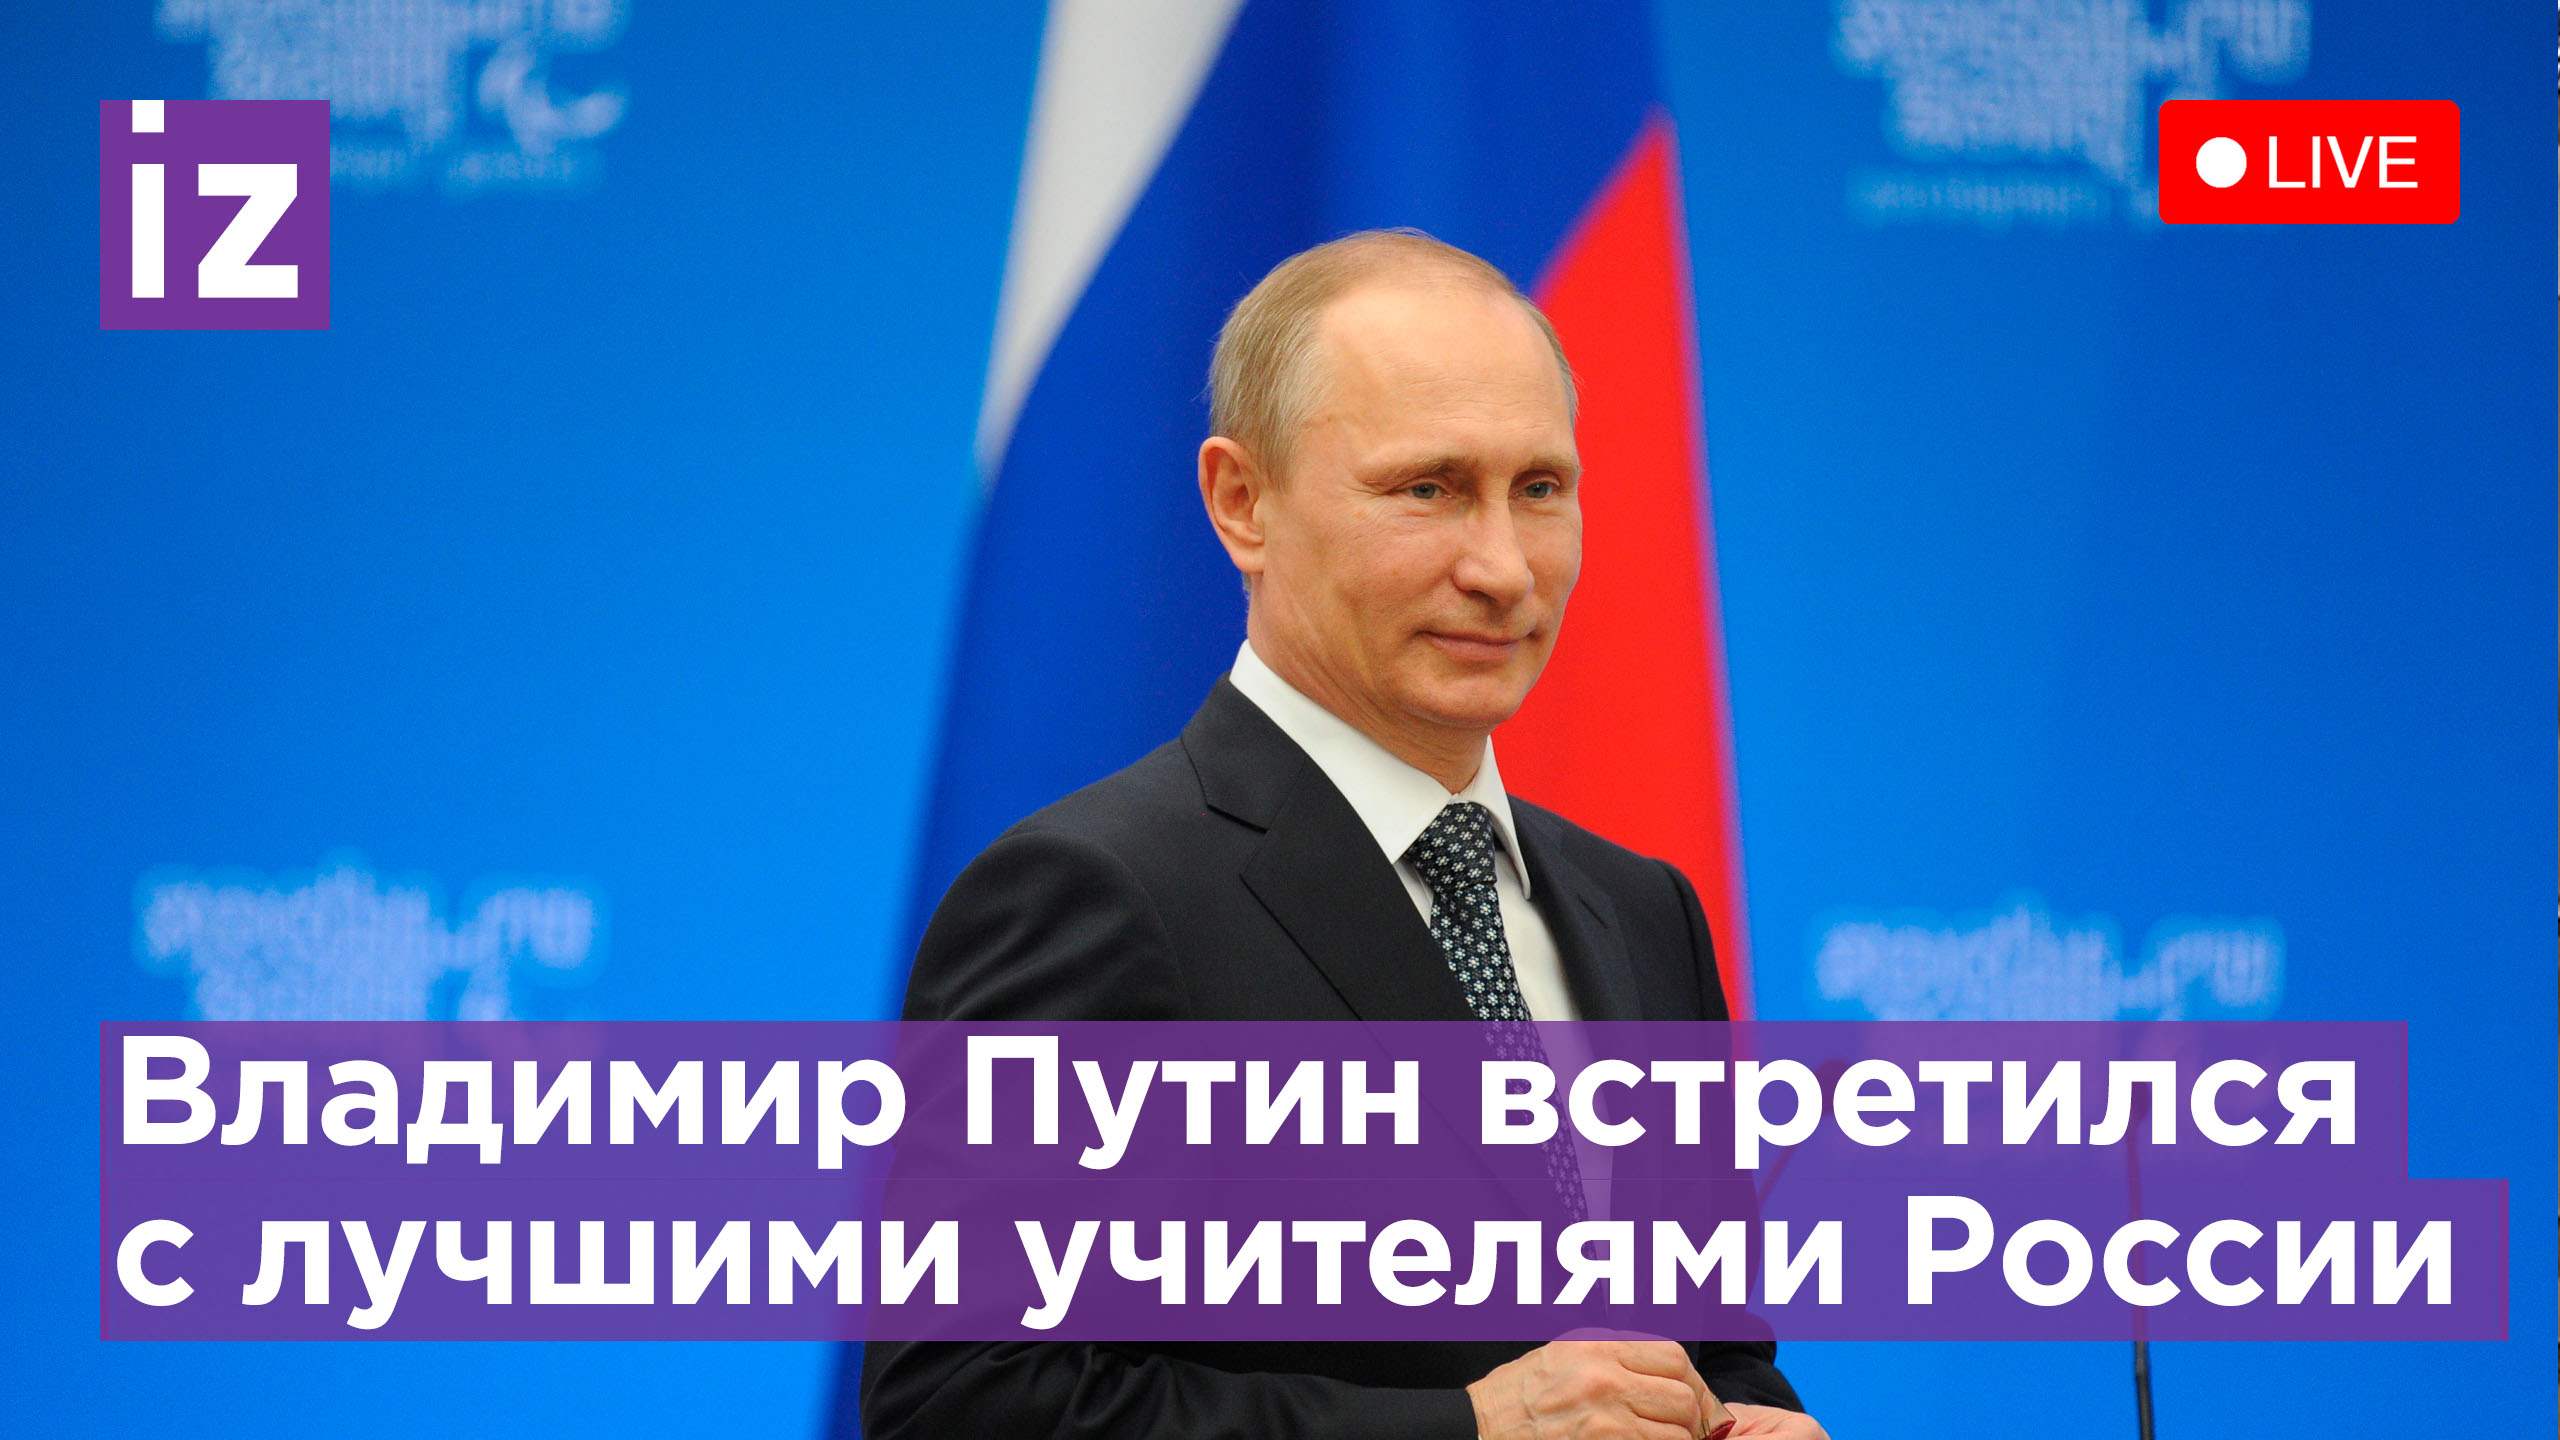 Владимир Путин обратился к лучшим учителям России. Прямая трансляция